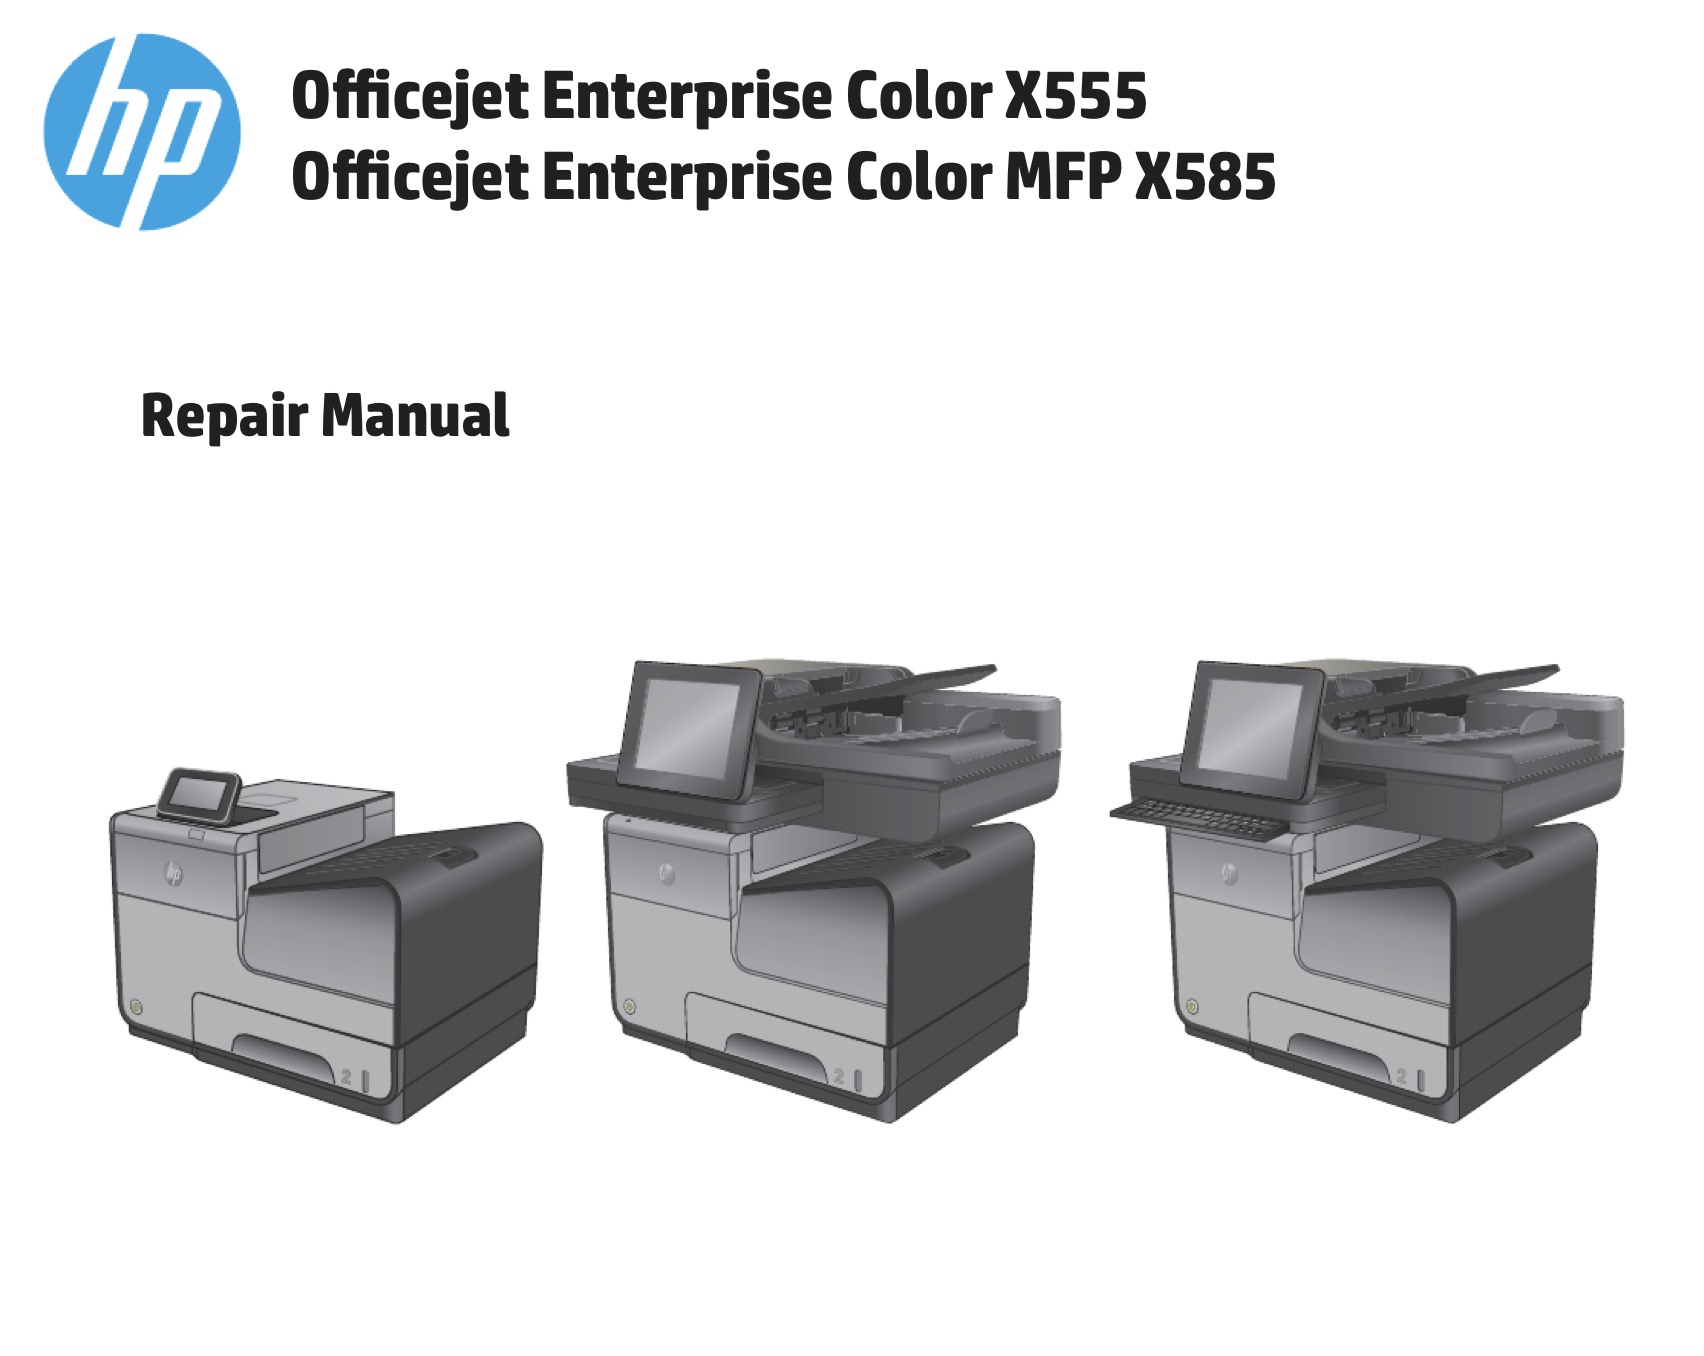 HP Officejet Enterprise Color X555, MFP X585   Parts List and Diagrams